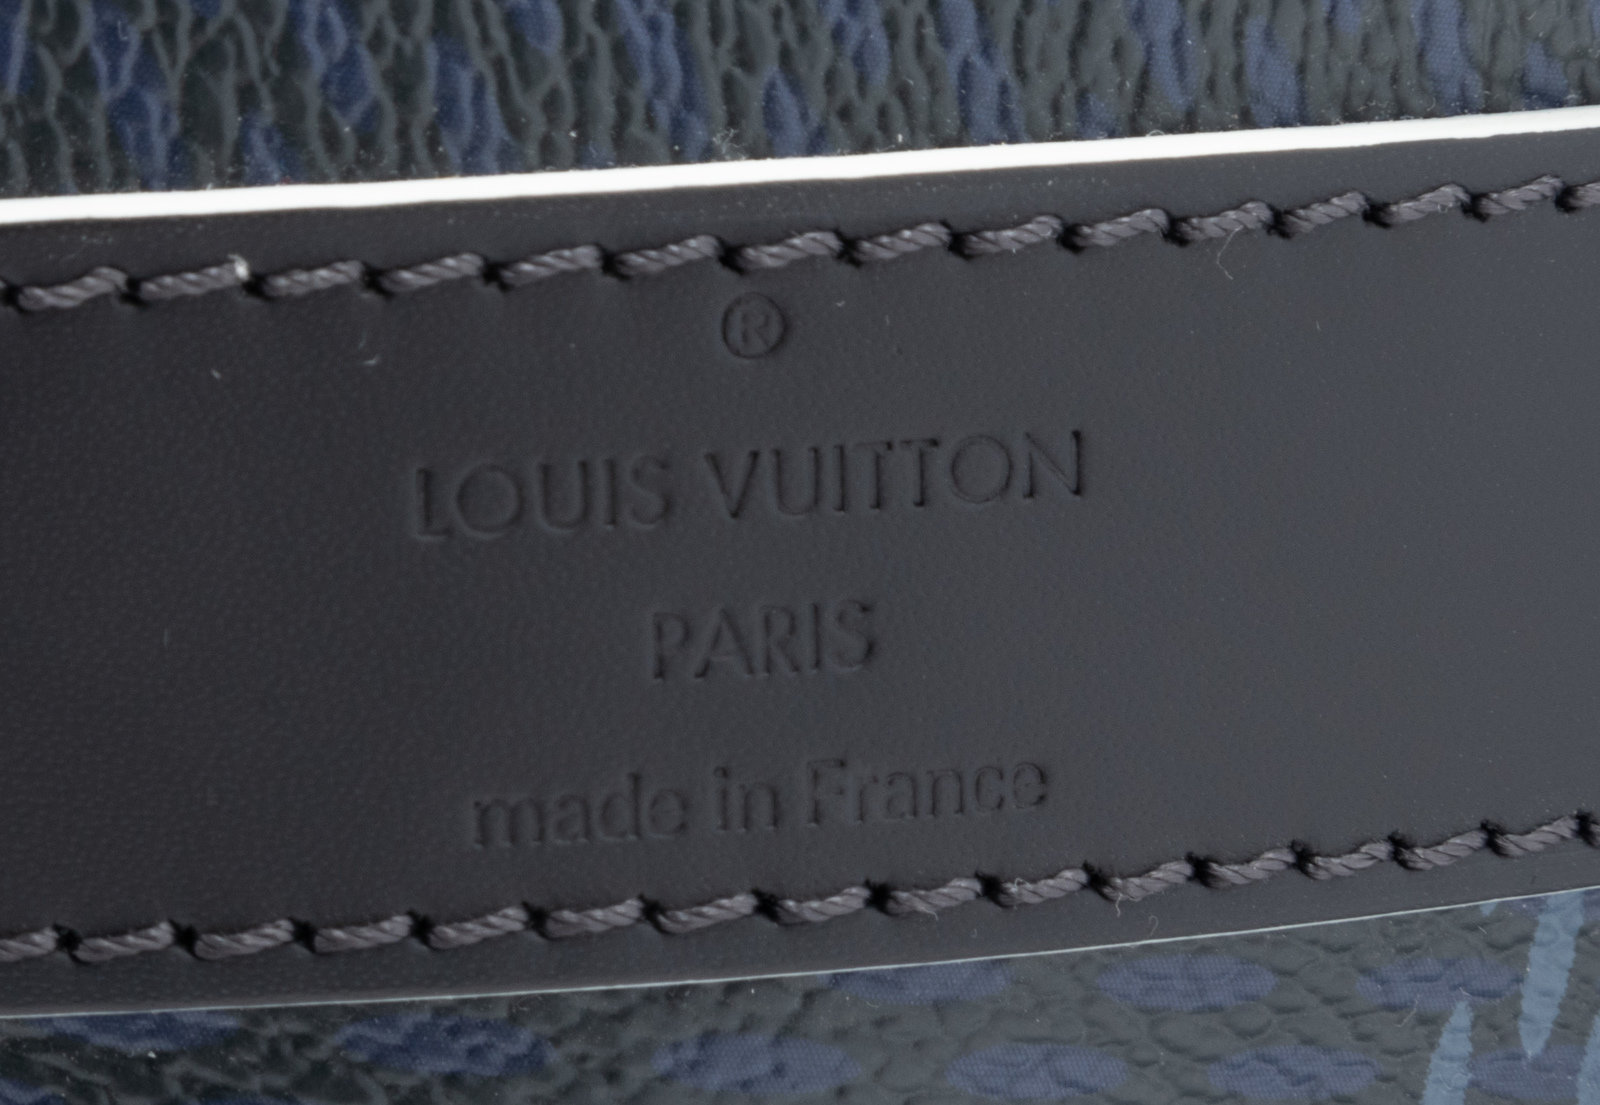 LOUIS VUITTON Americas Cup Apollo Latitude Damier Cobalt Backpack